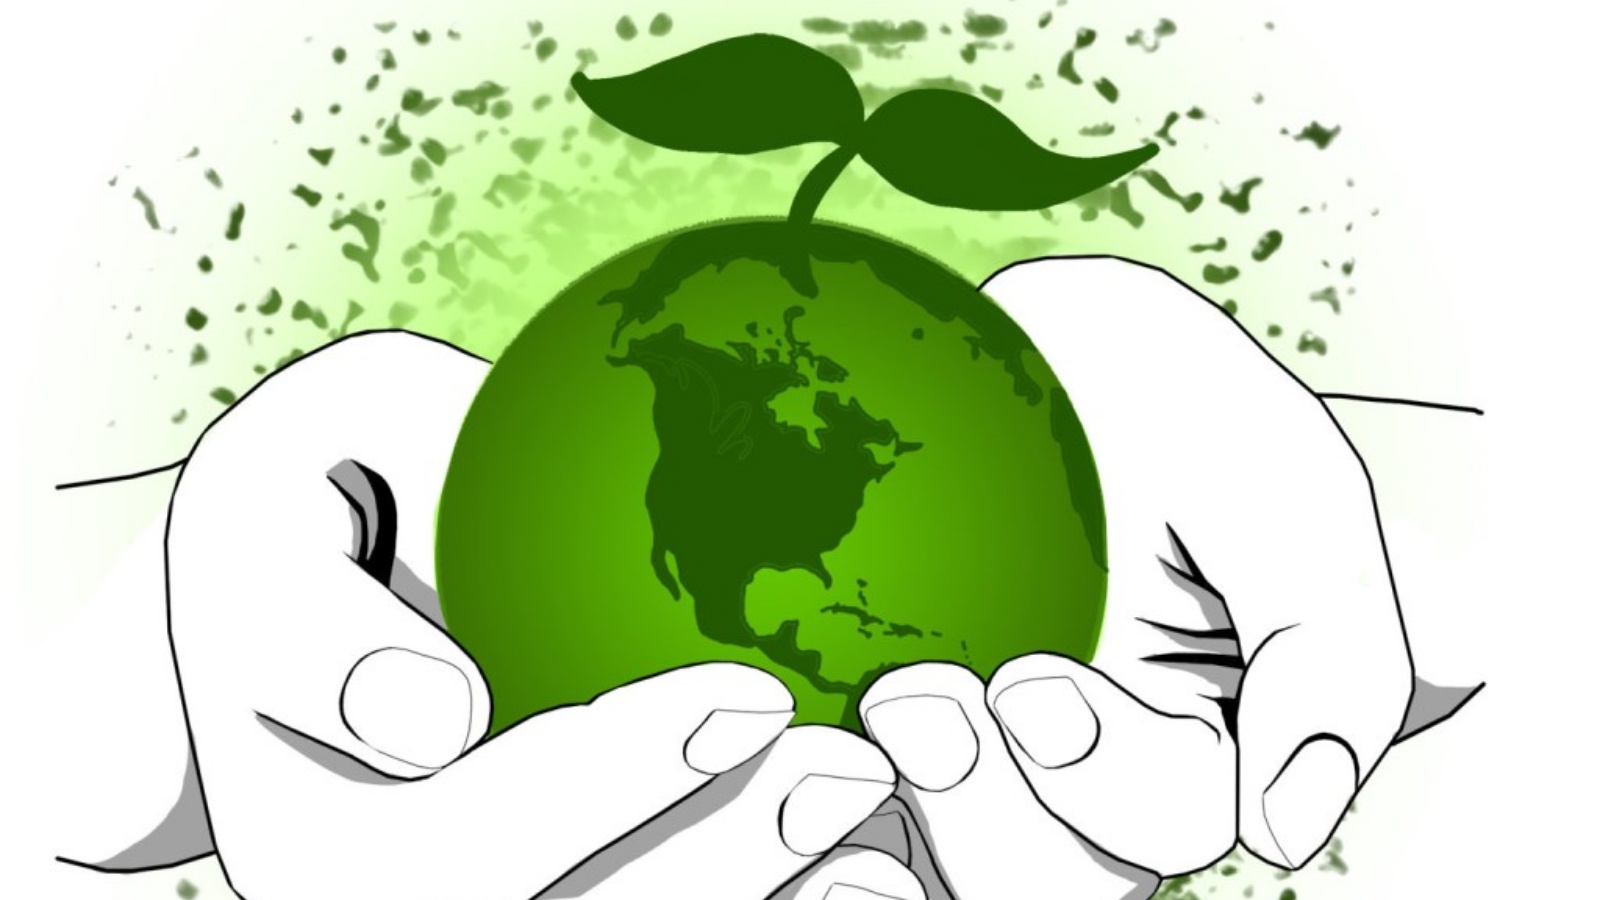 Помоги спасти мир. Рисунок на экологическую тематику. Экология картинки. Экология земли. Плакат защита окружающей среды.